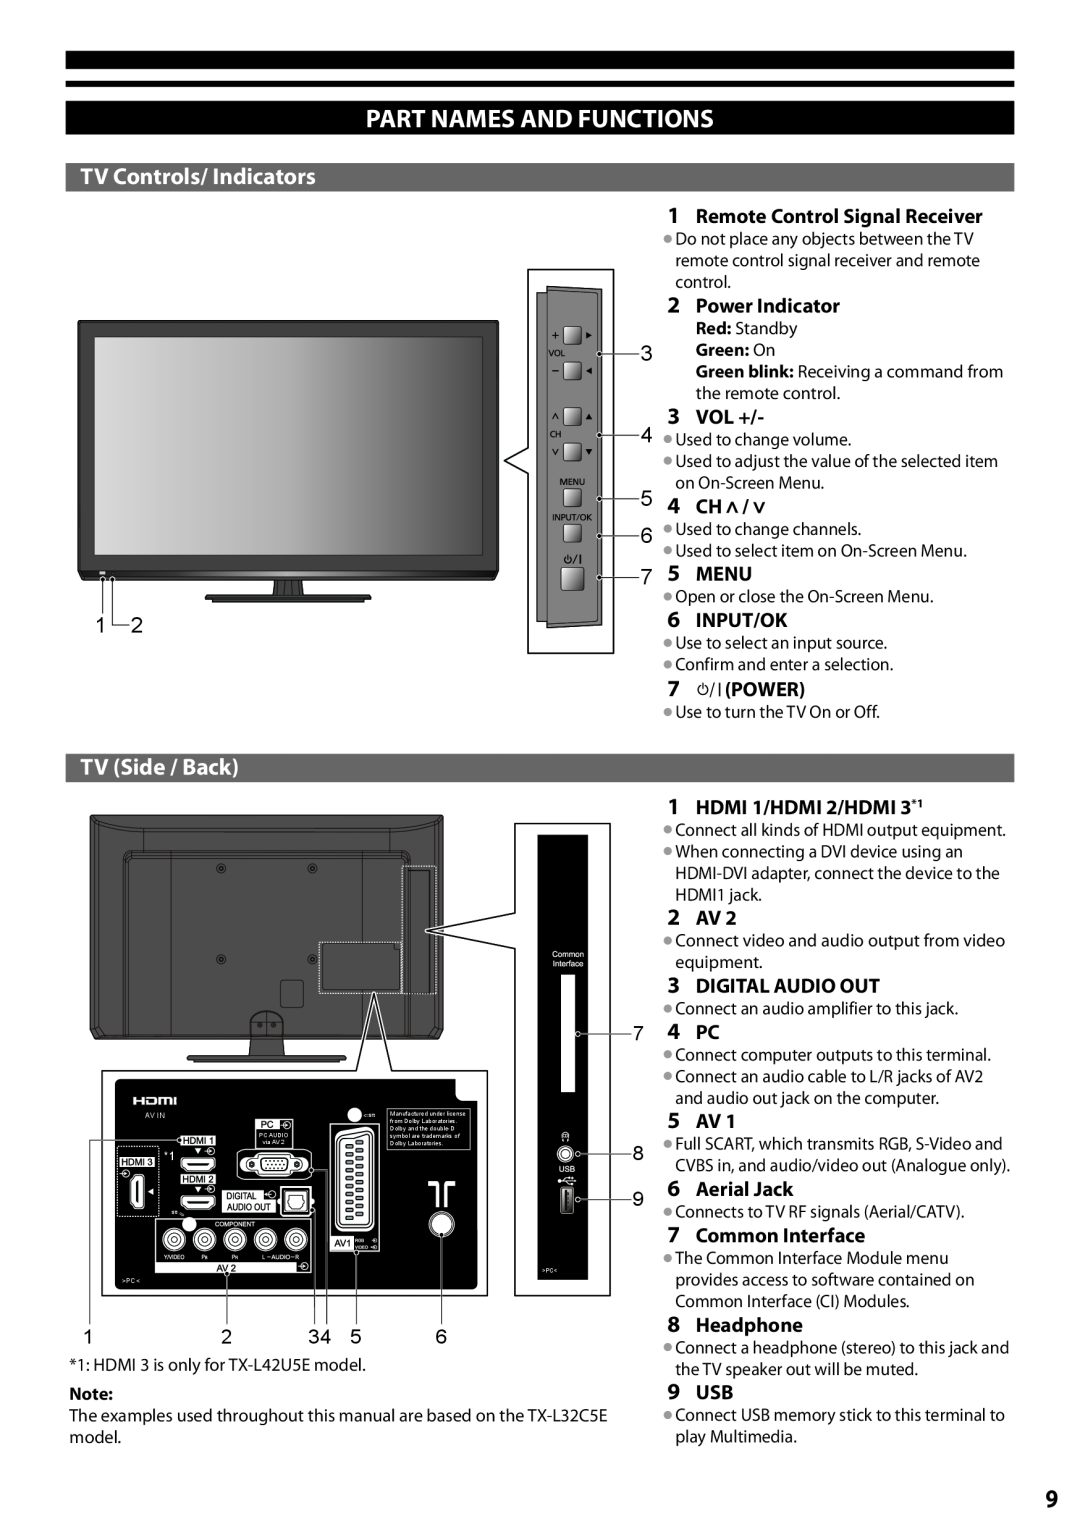 Panasonic TX-L32C5E, TX-L42U5E manual Part Names And Functions, TV Controls/ Indicators, TV Side / Back 